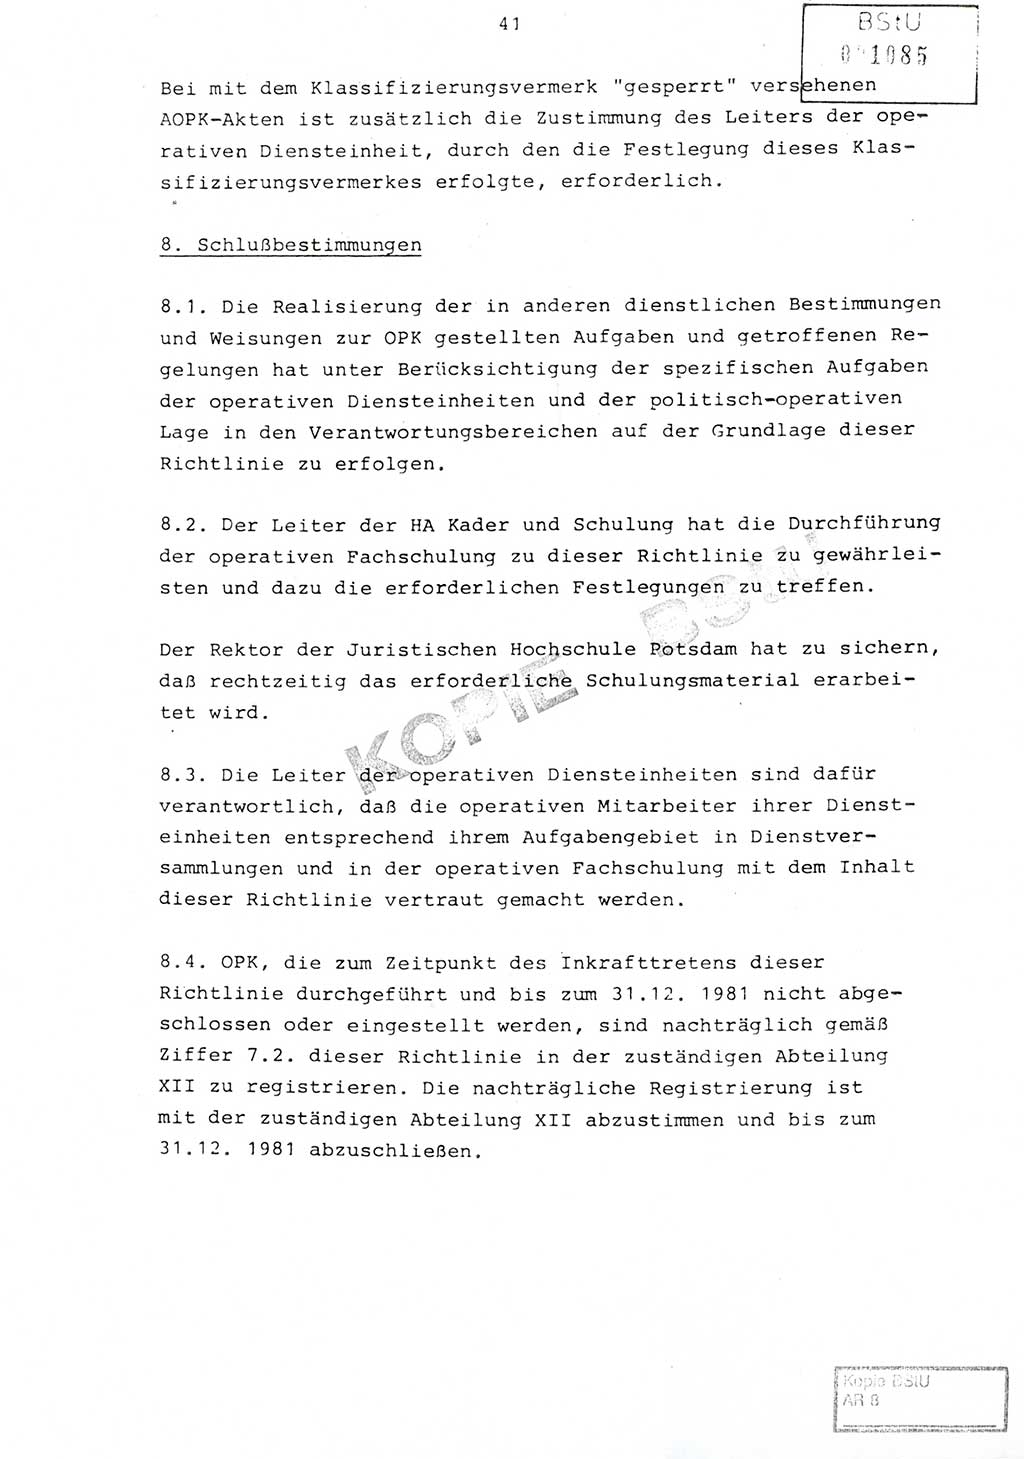 Richtlinie Nr. 1/81 über die operative Personenkontrolle (OPK), Ministerium für Staatssicherheit (MfS) [Deutsche Demokratische Republik (DDR)], Der Minister, Geheime Verschlußsache (GVS) ooo8-10/81, Berlin 1981, Blatt 41 (RL 1/81 OPK DDR MfS Min. GVS ooo8-10/81 1981, Bl. 41)